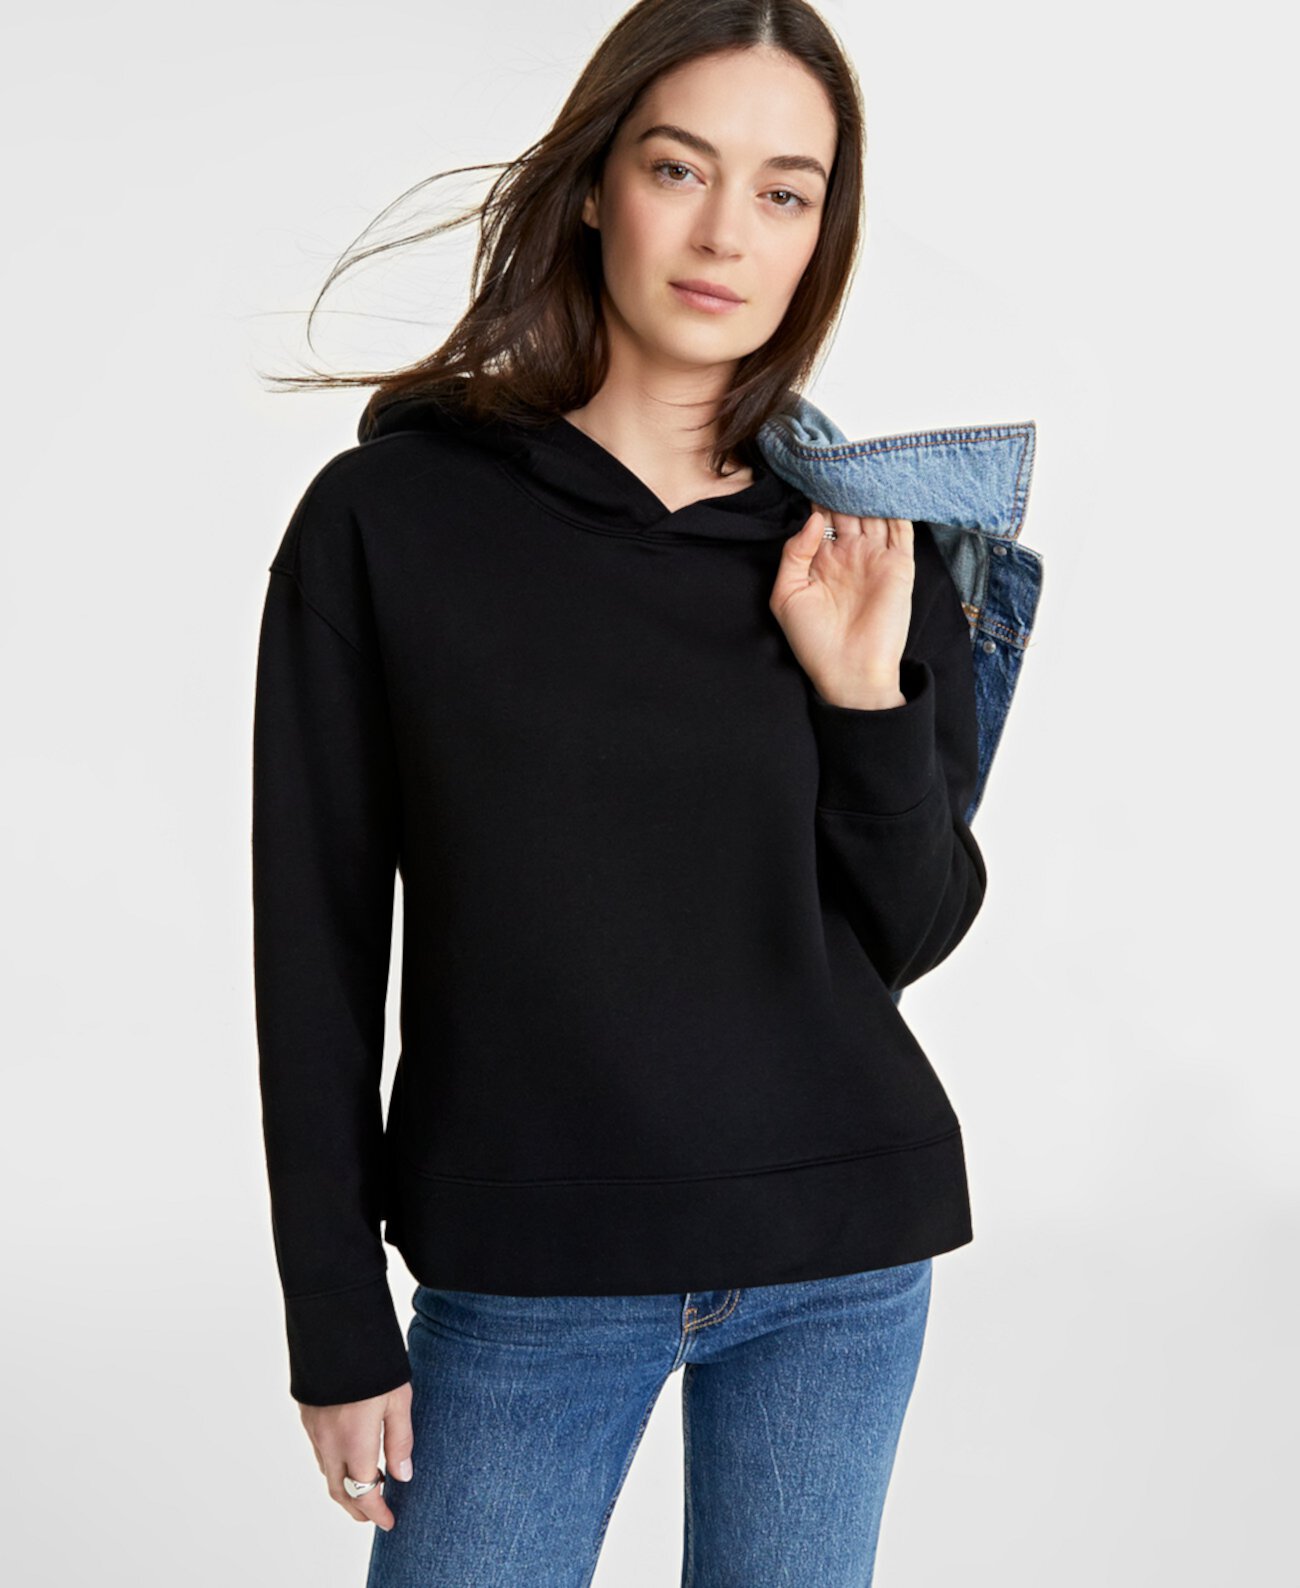 Женский пуловер с капюшоном, созданный для Macy's On 34th